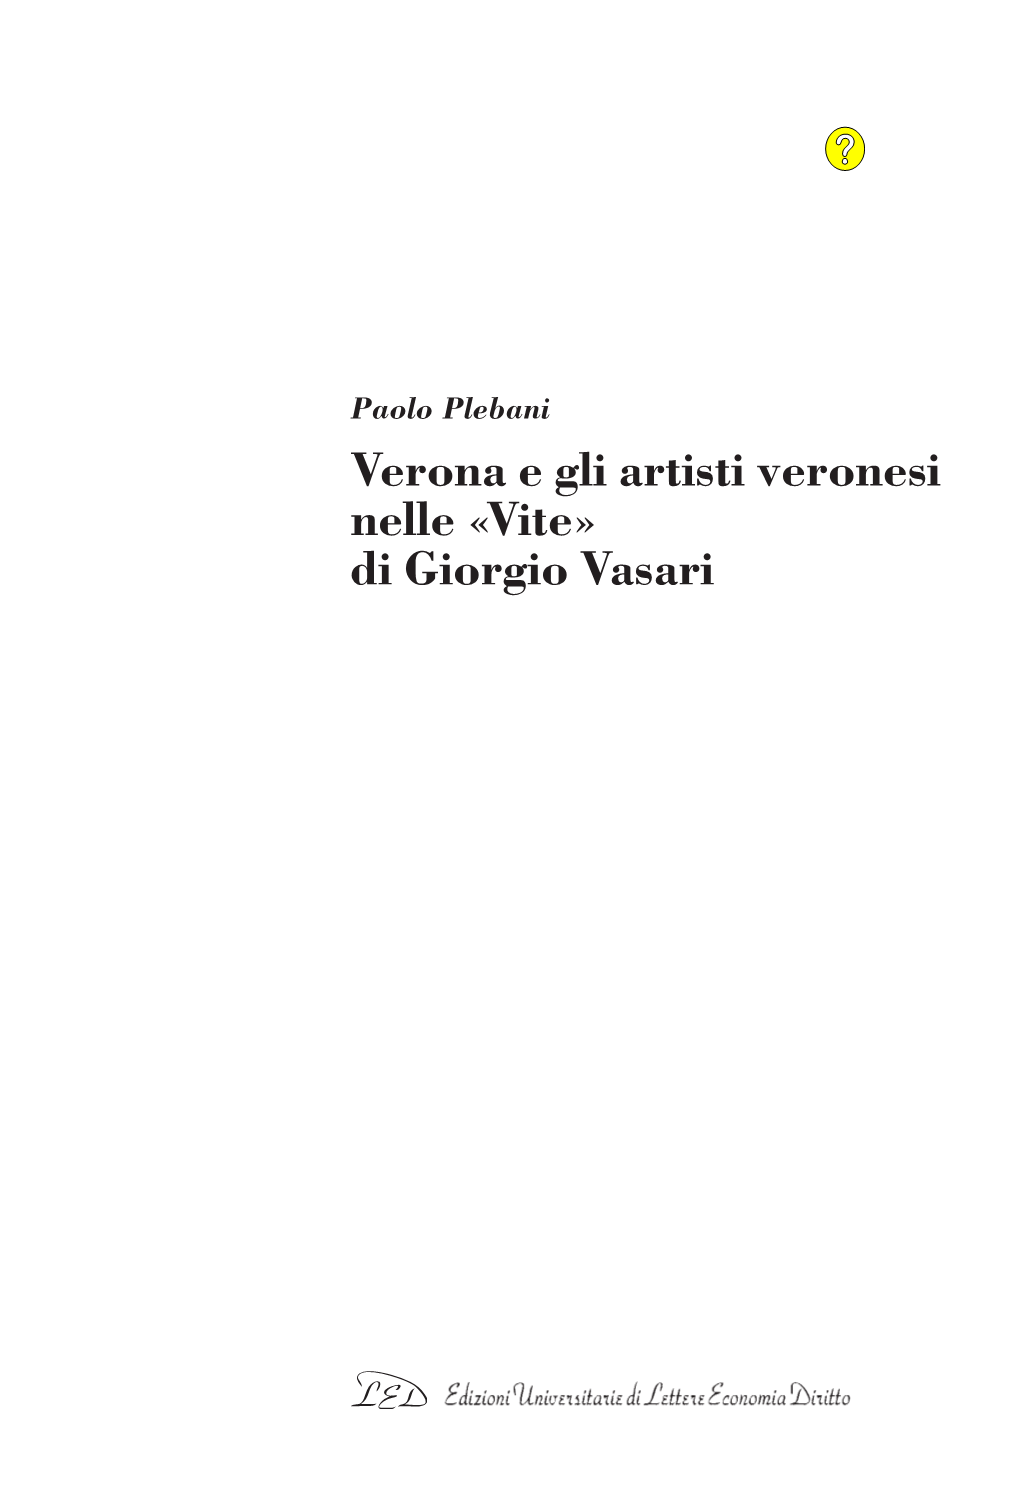 Di Giorgio Vasari